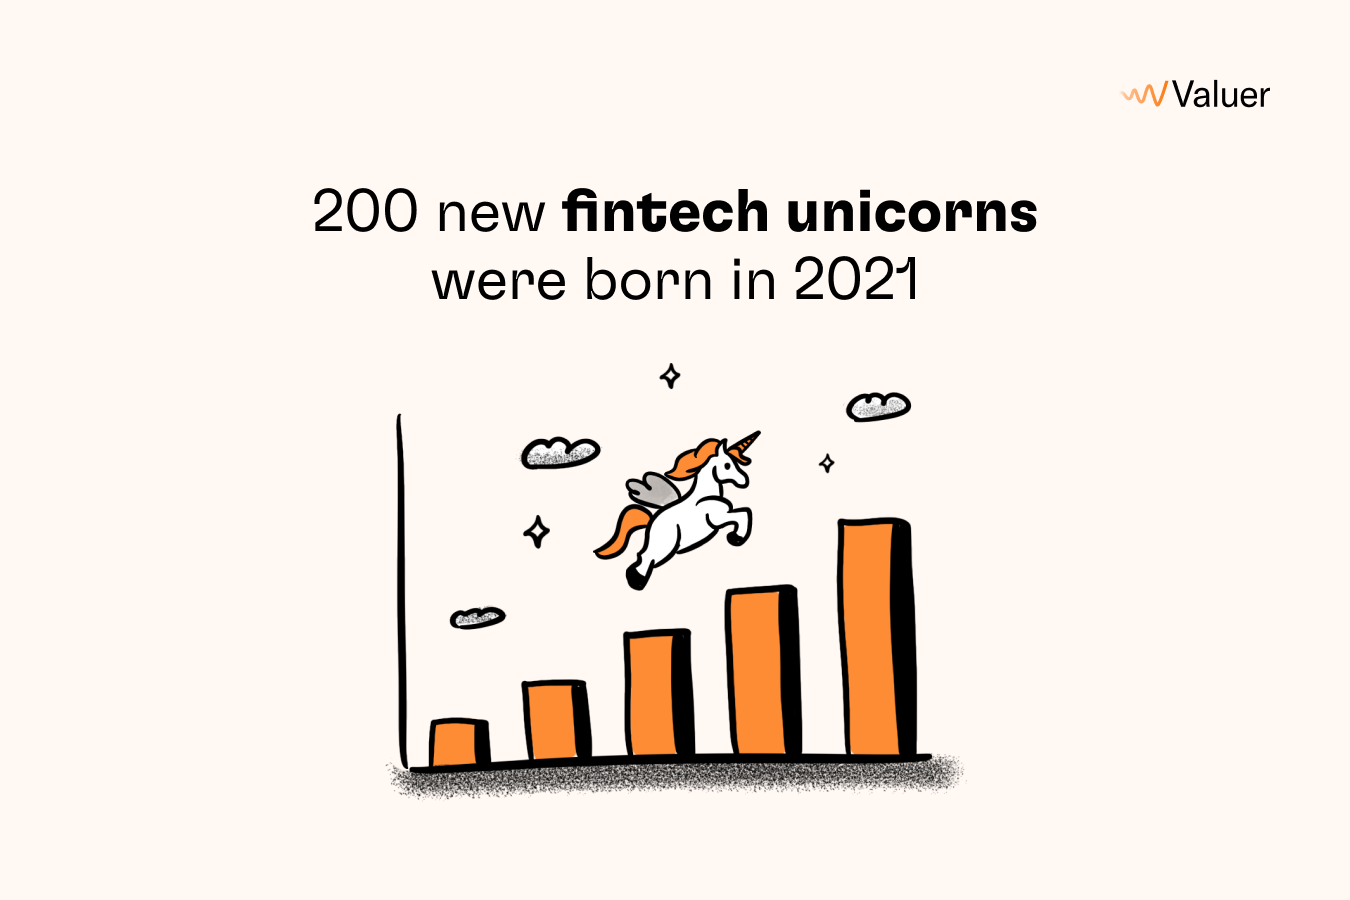 200 new fintech unicorns were born in 2021